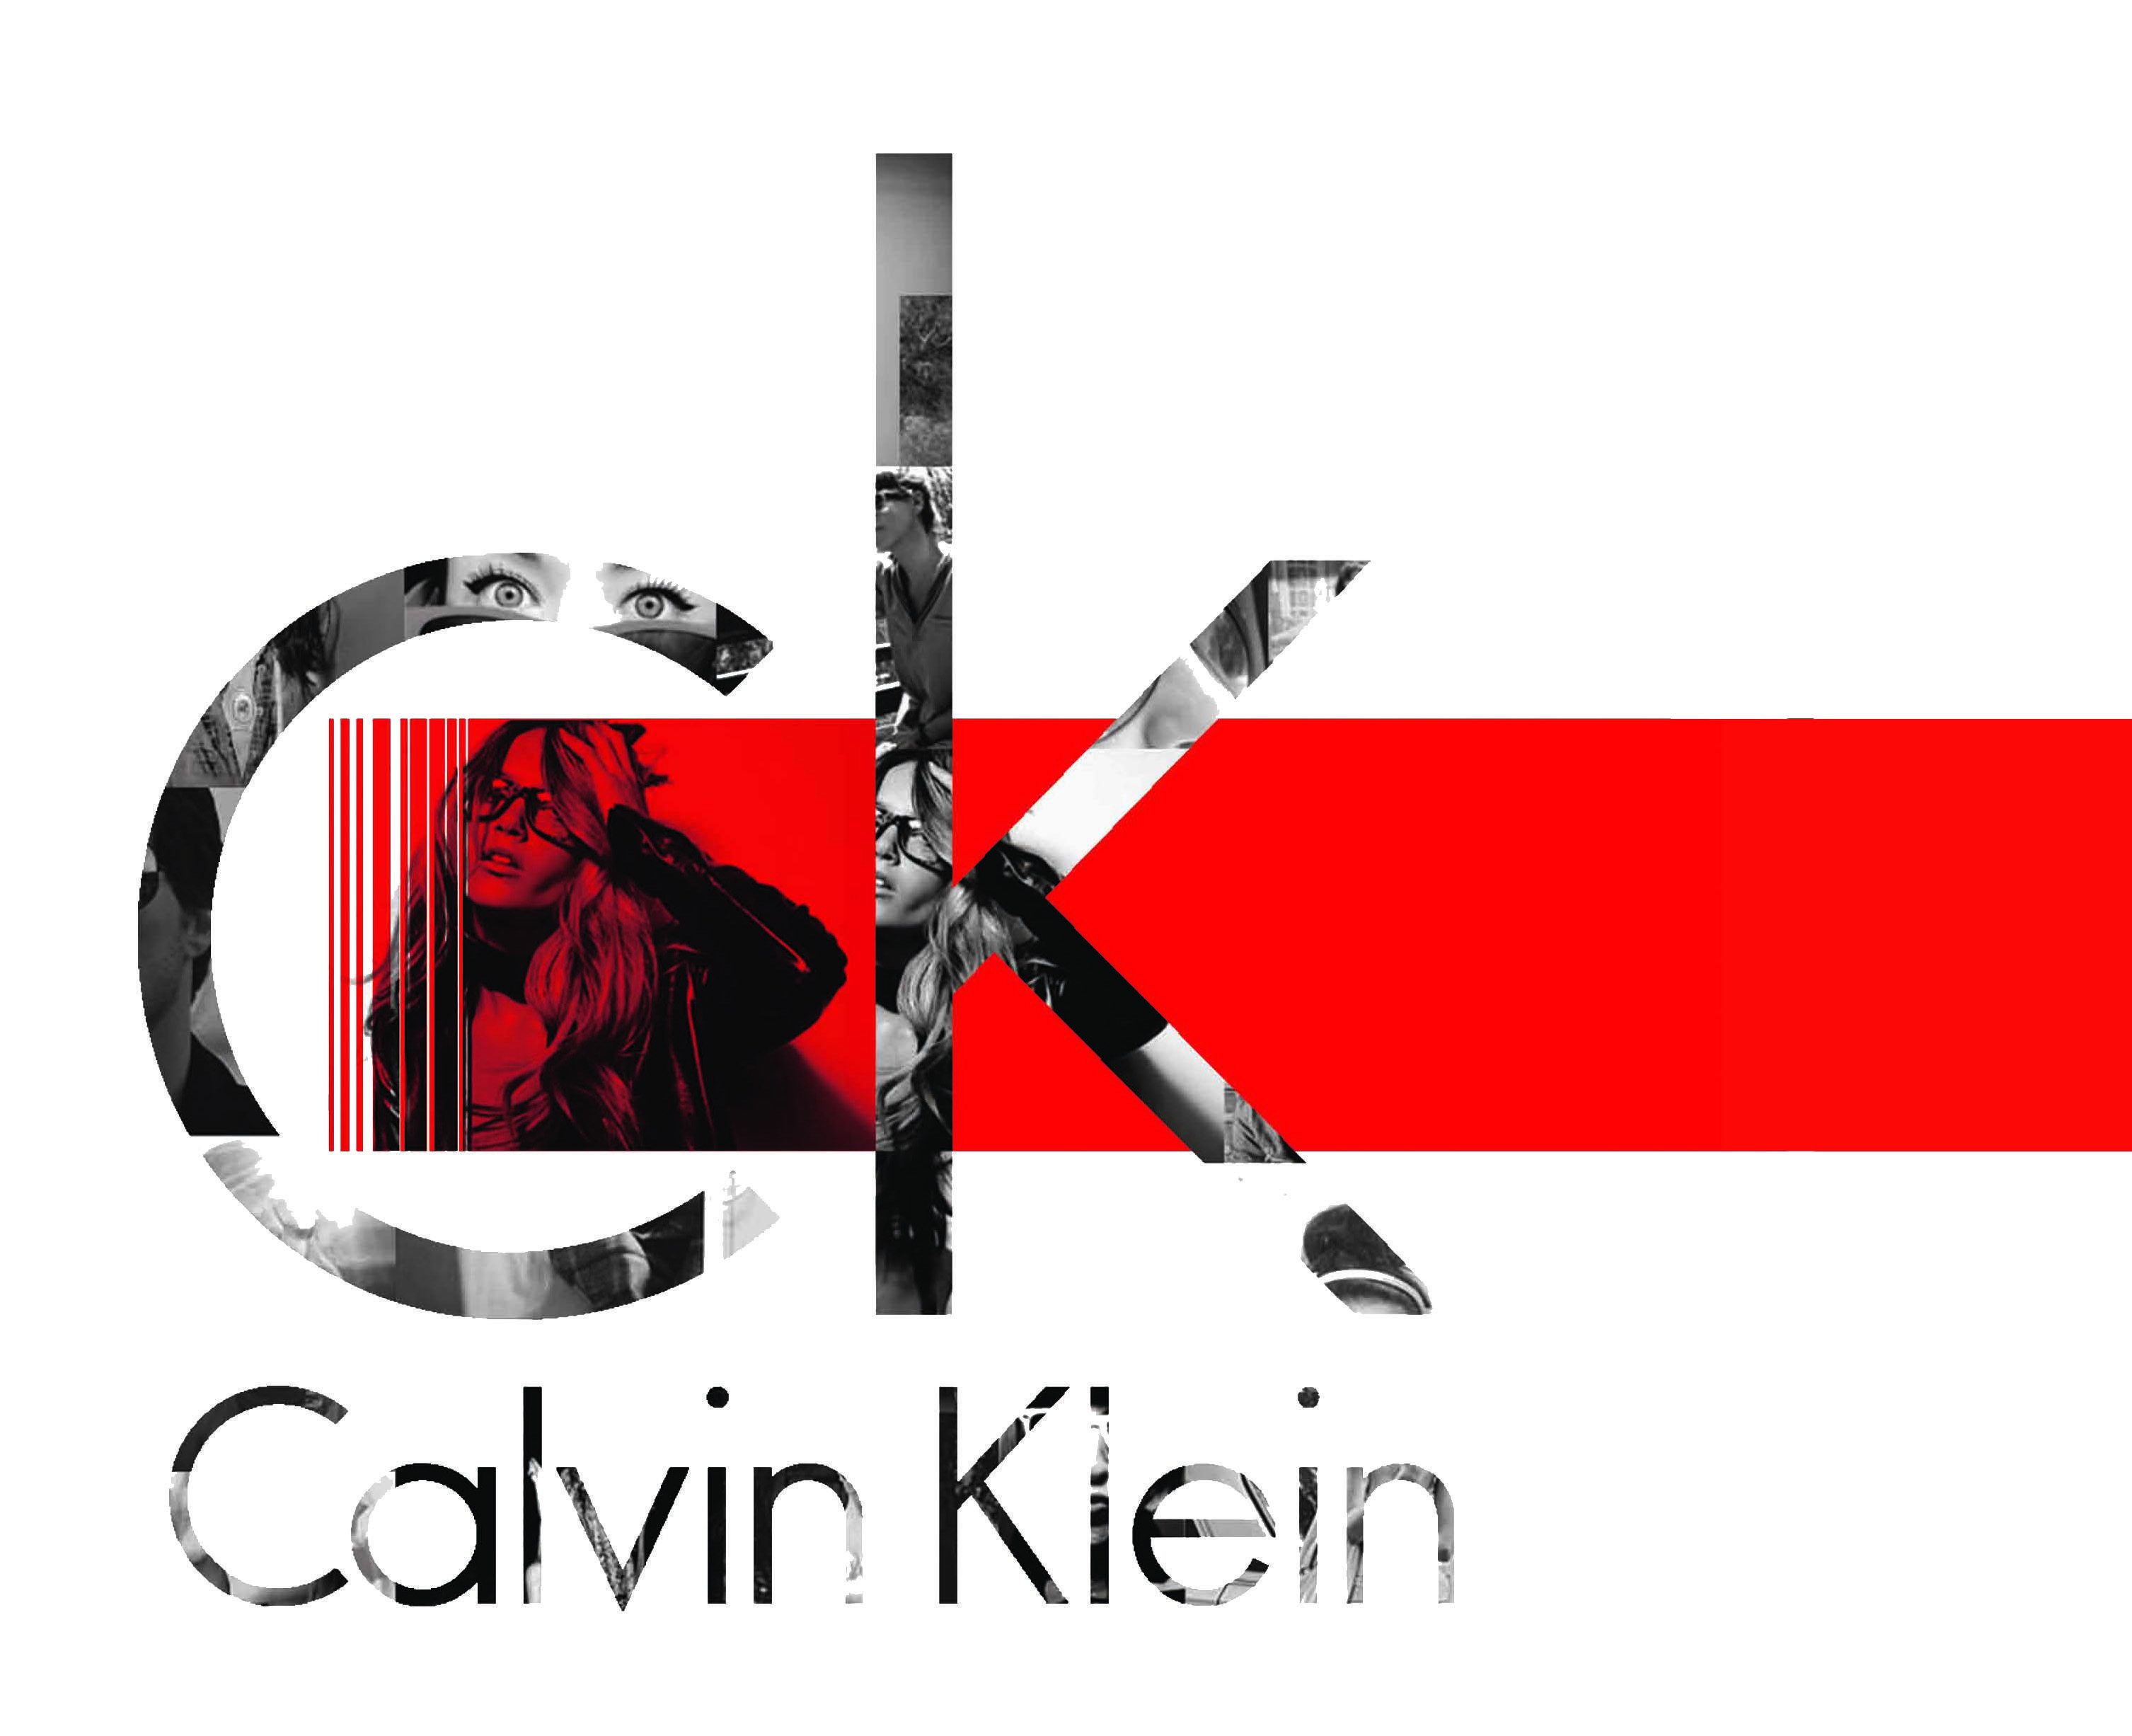 Calvin Klein Logo - Pin by Alexis Malagon on Graphic Design in 2019 | Calvin klein ...